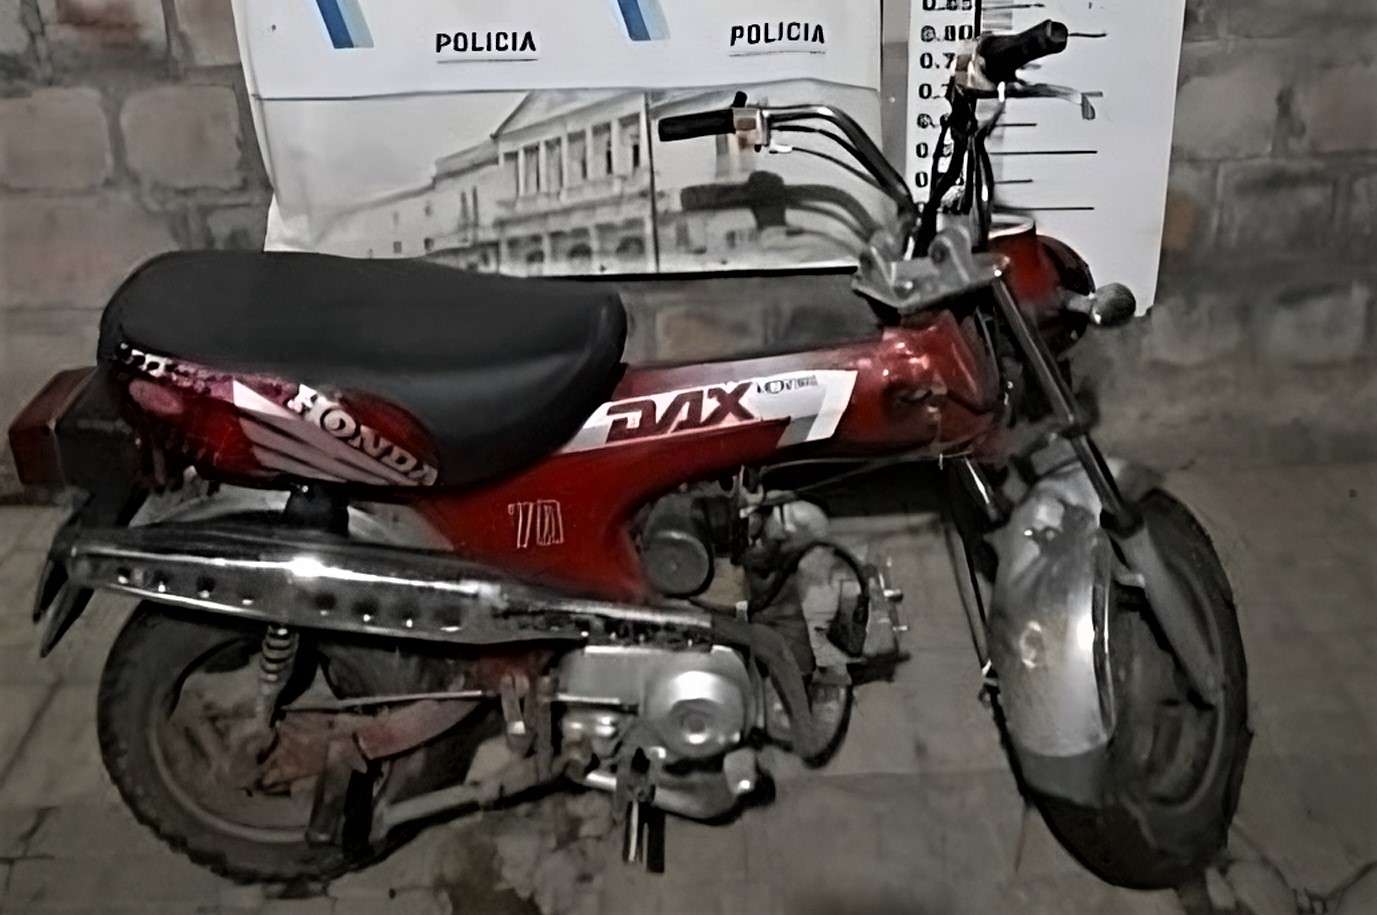 Detuvieron a dos menores tras robar una moto: tienen 17 y 10 años